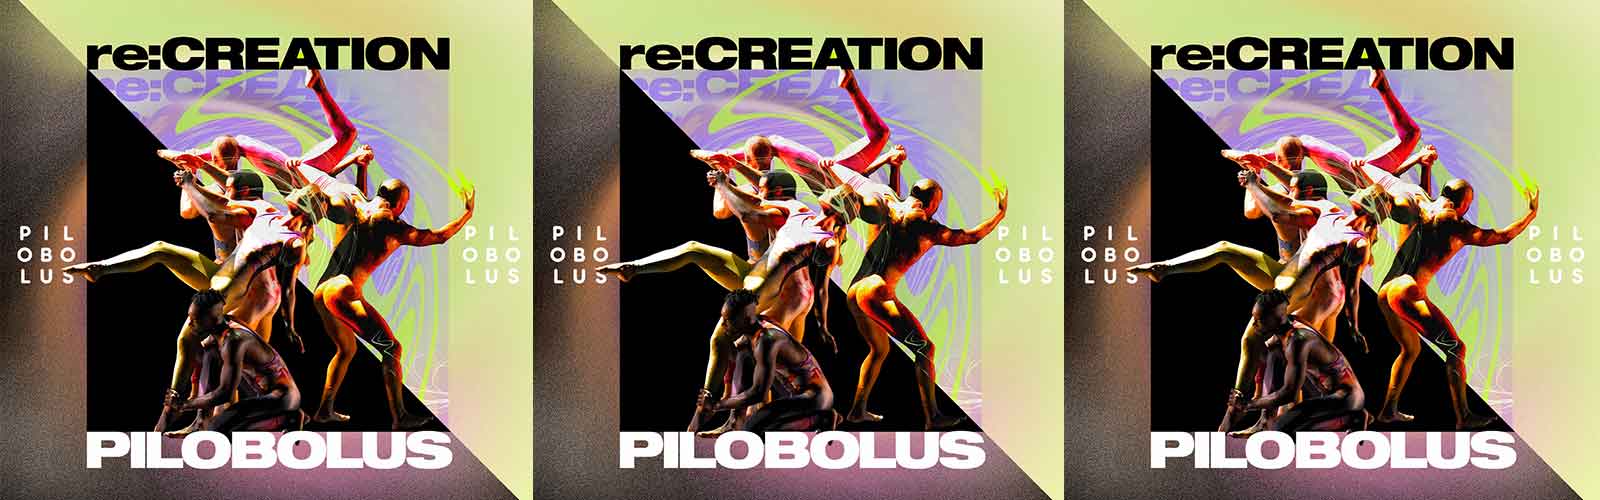 Pilobolus re:CREATION